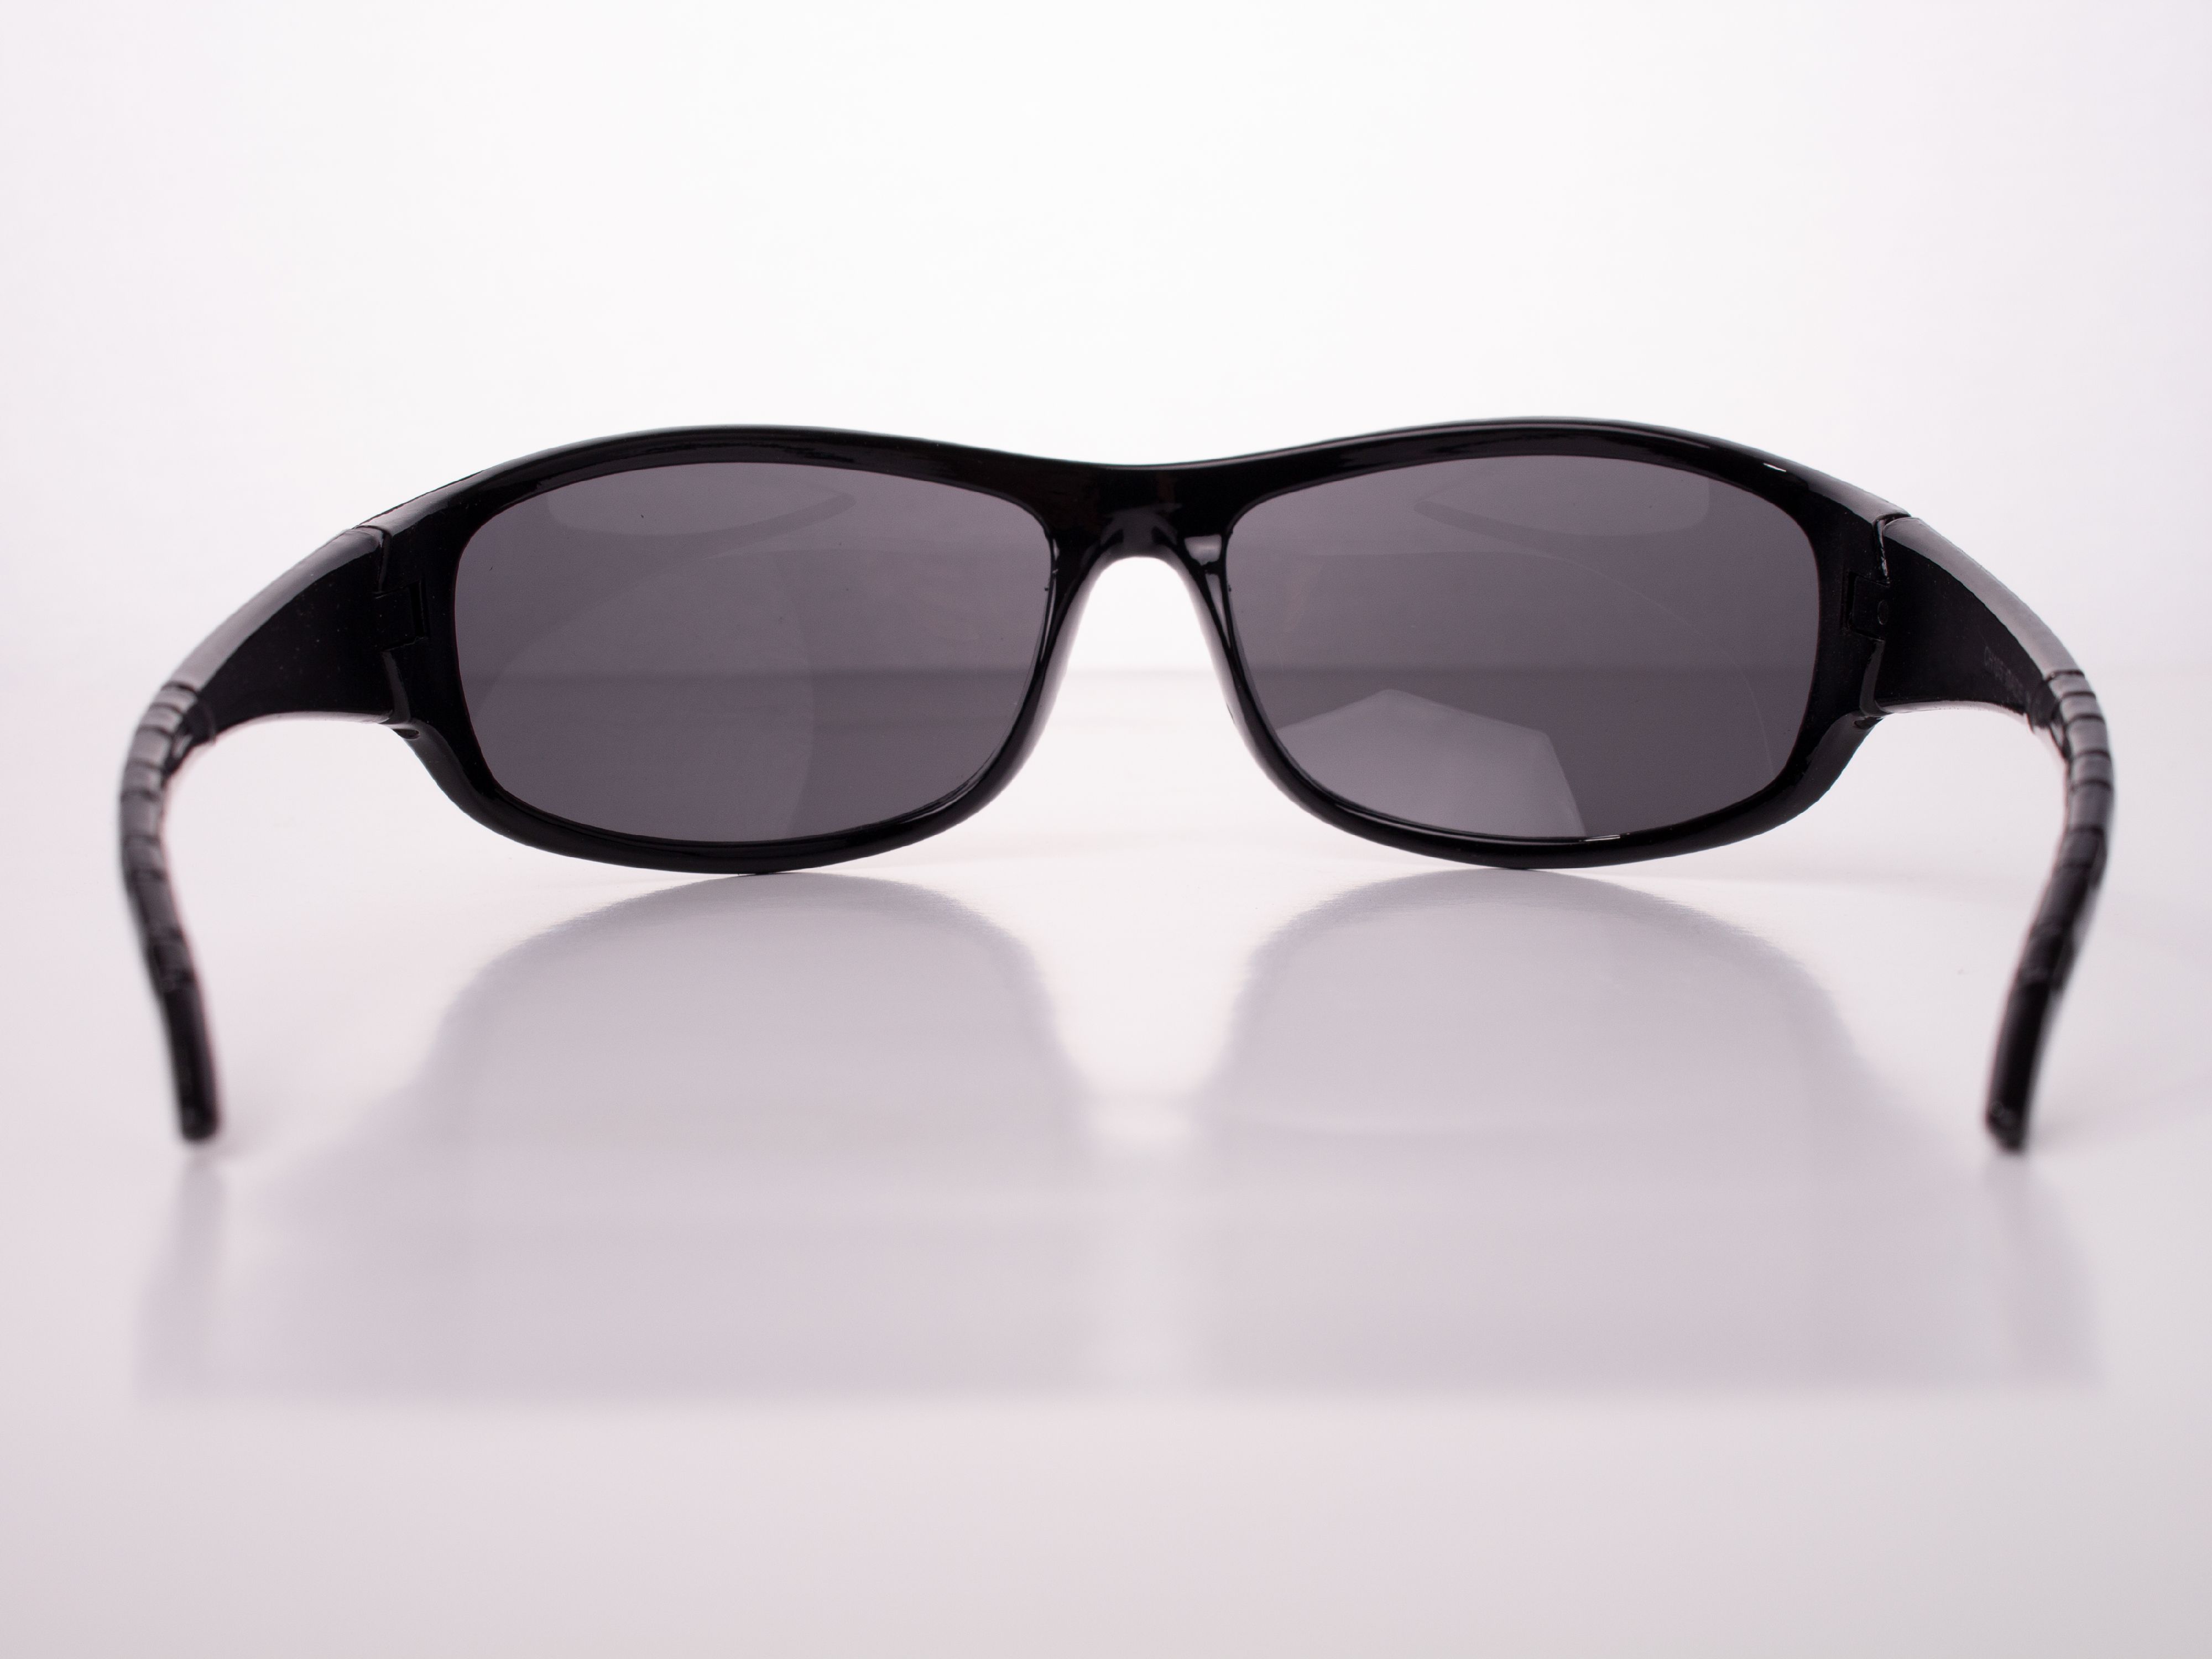 Men's Driving Wrap Sport Sunglasses, Black Oval Lens, Gloss or Matte Black Frame - image 3 of 3